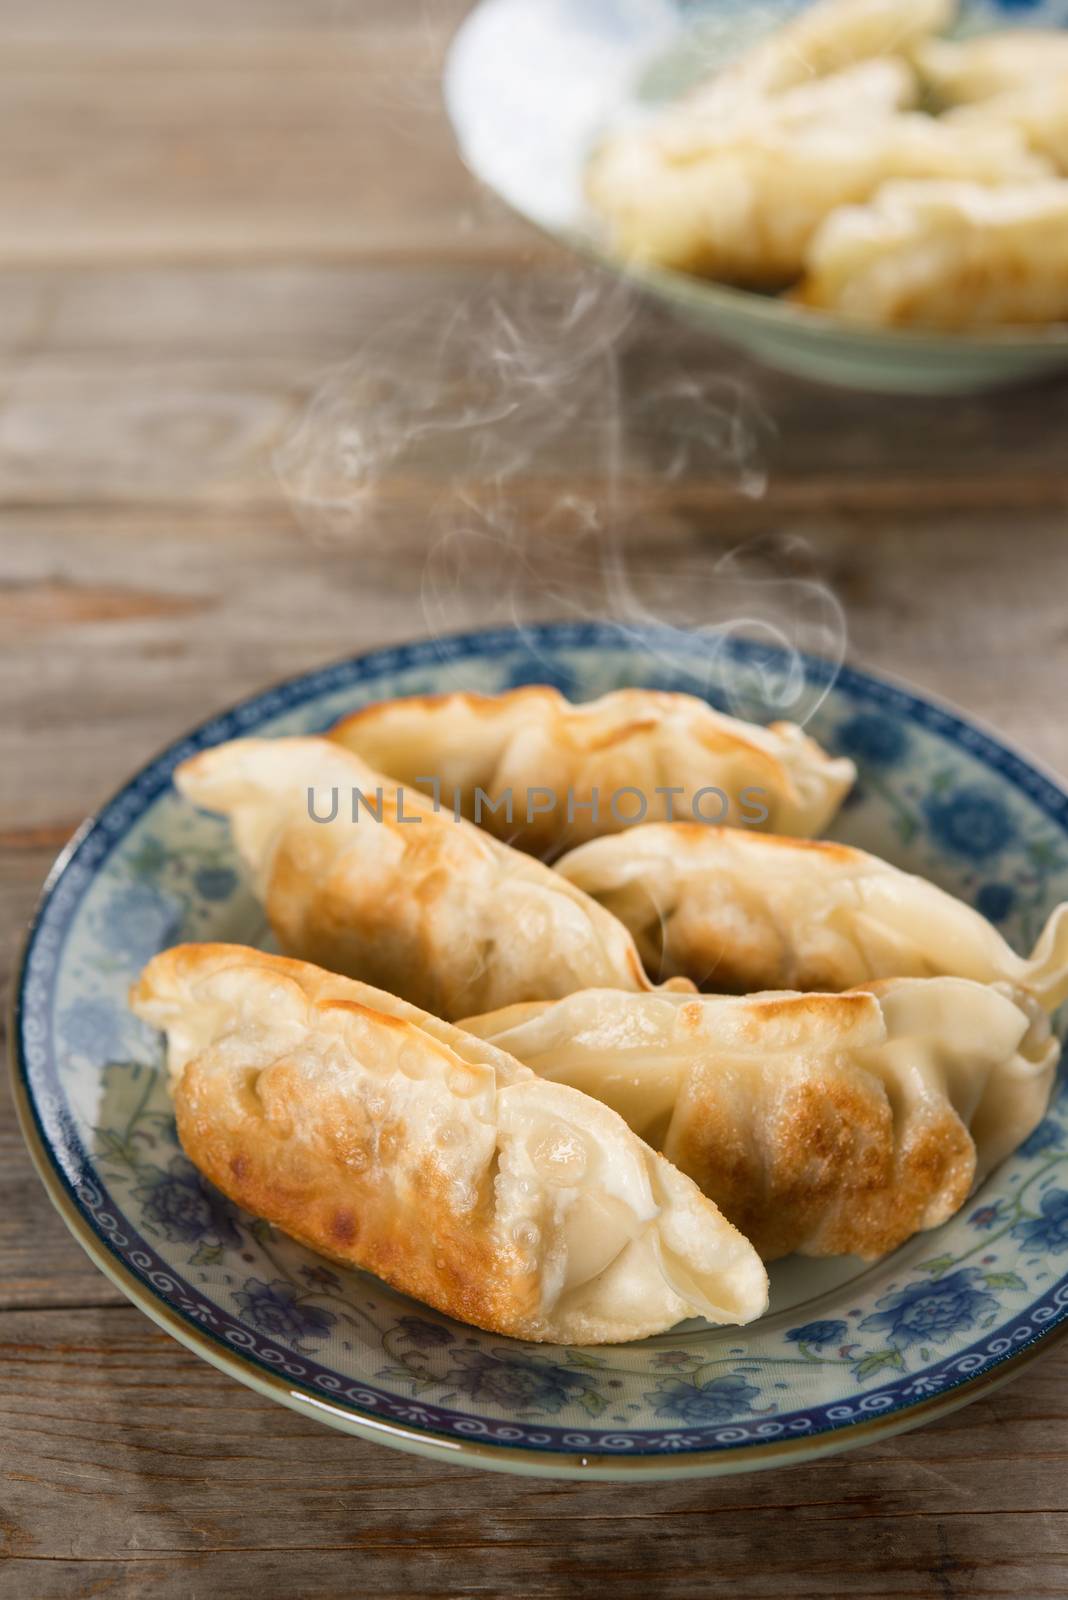 Asian dish pan fried dumplings by szefei